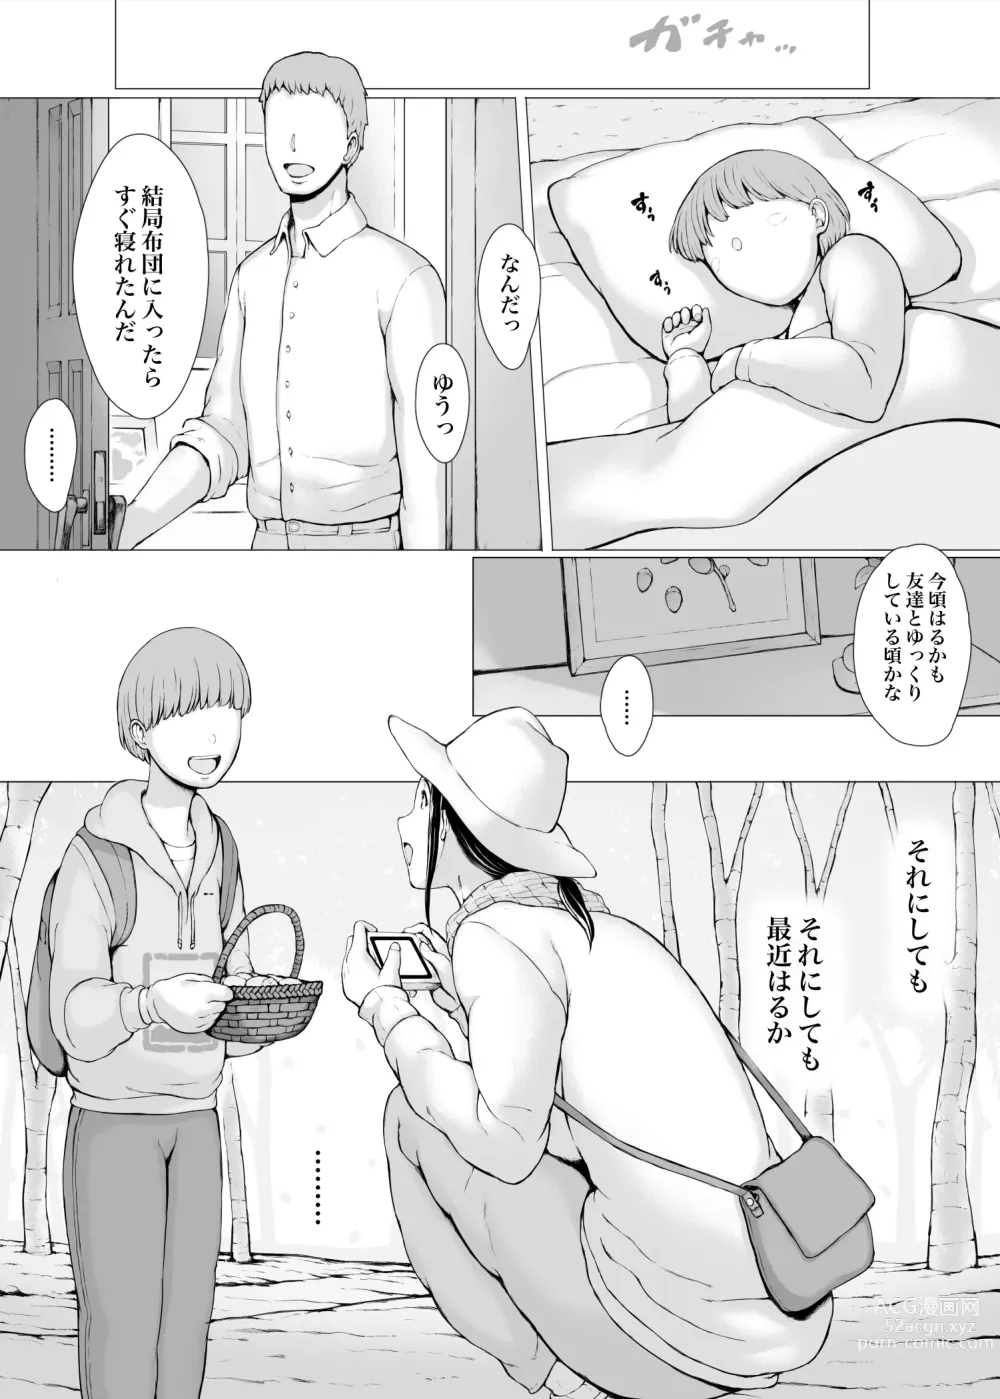 Page 14 of doujinshi Hahagui 3 yarichin ryokohen (Part. 2) ~